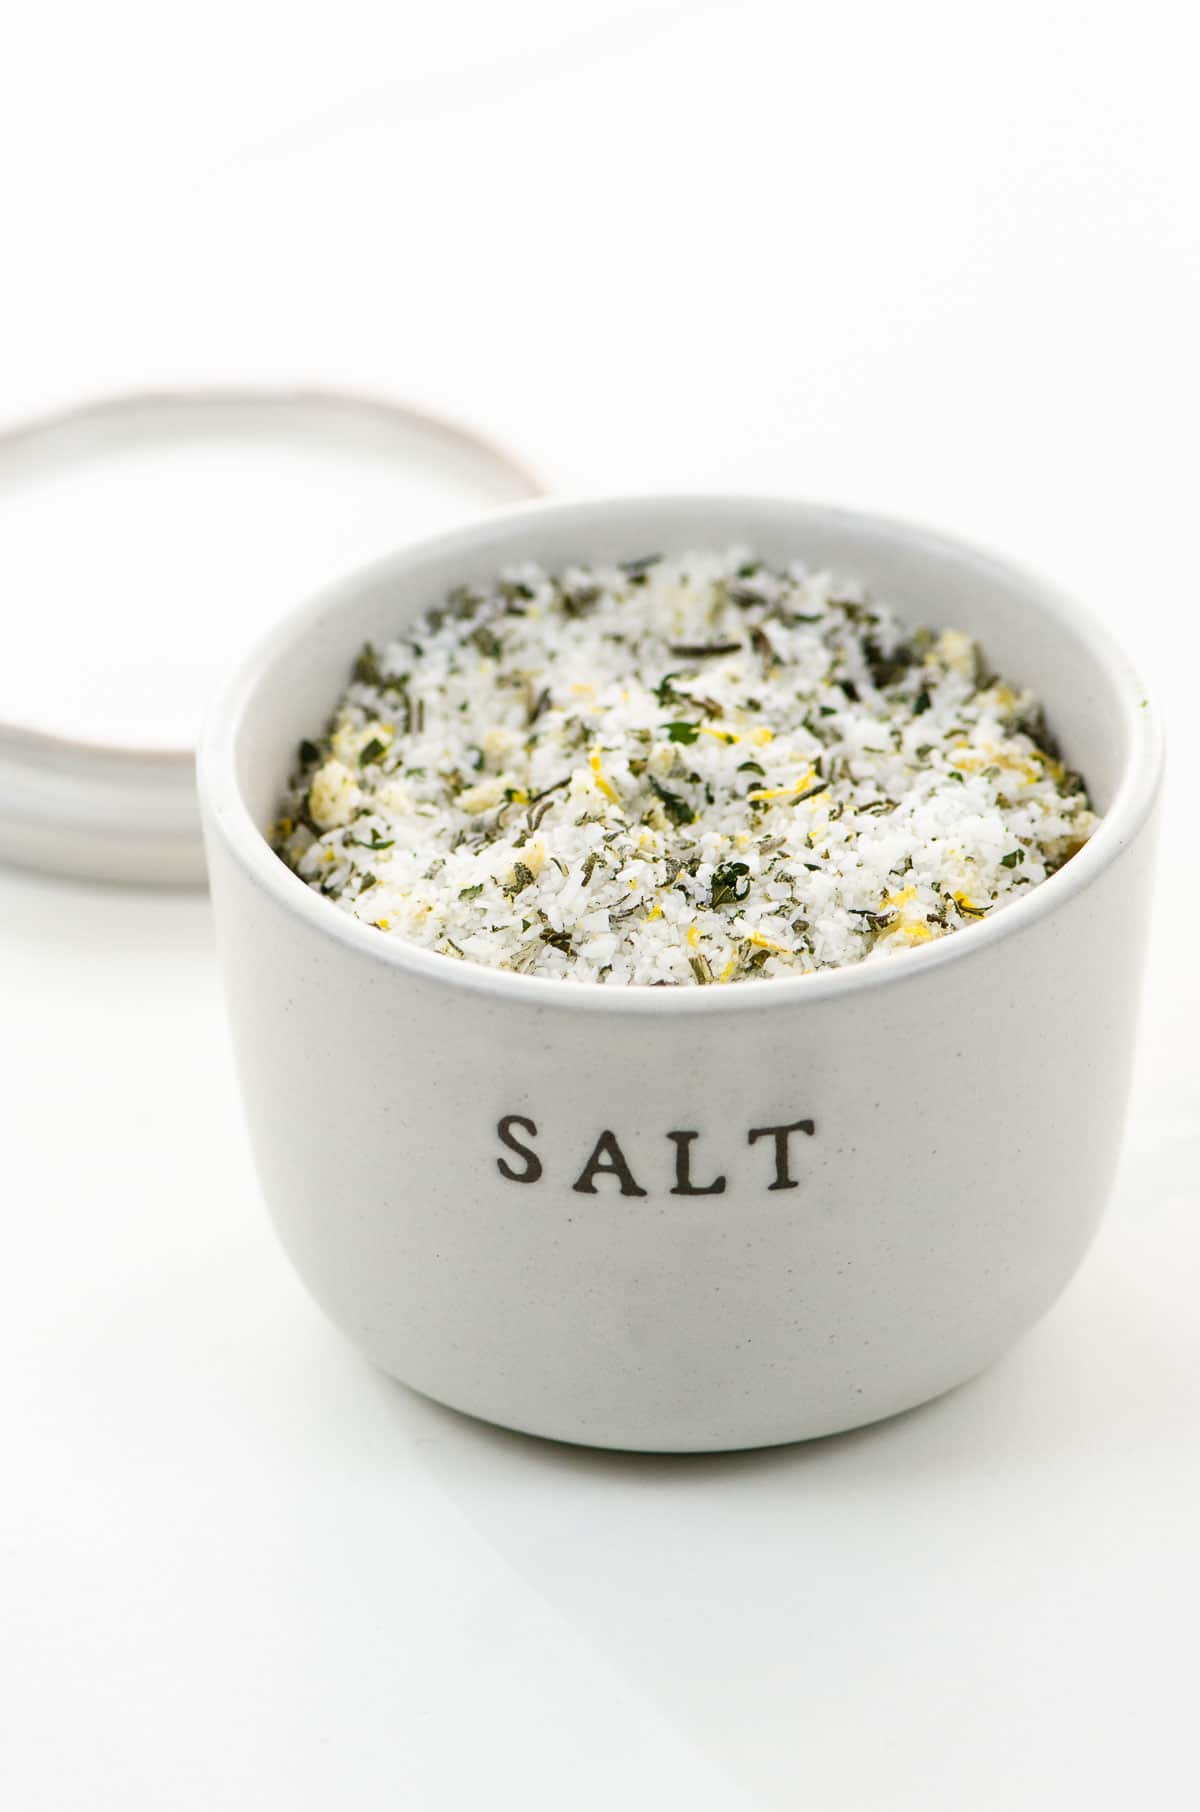 Herb salt in a ceramic crock